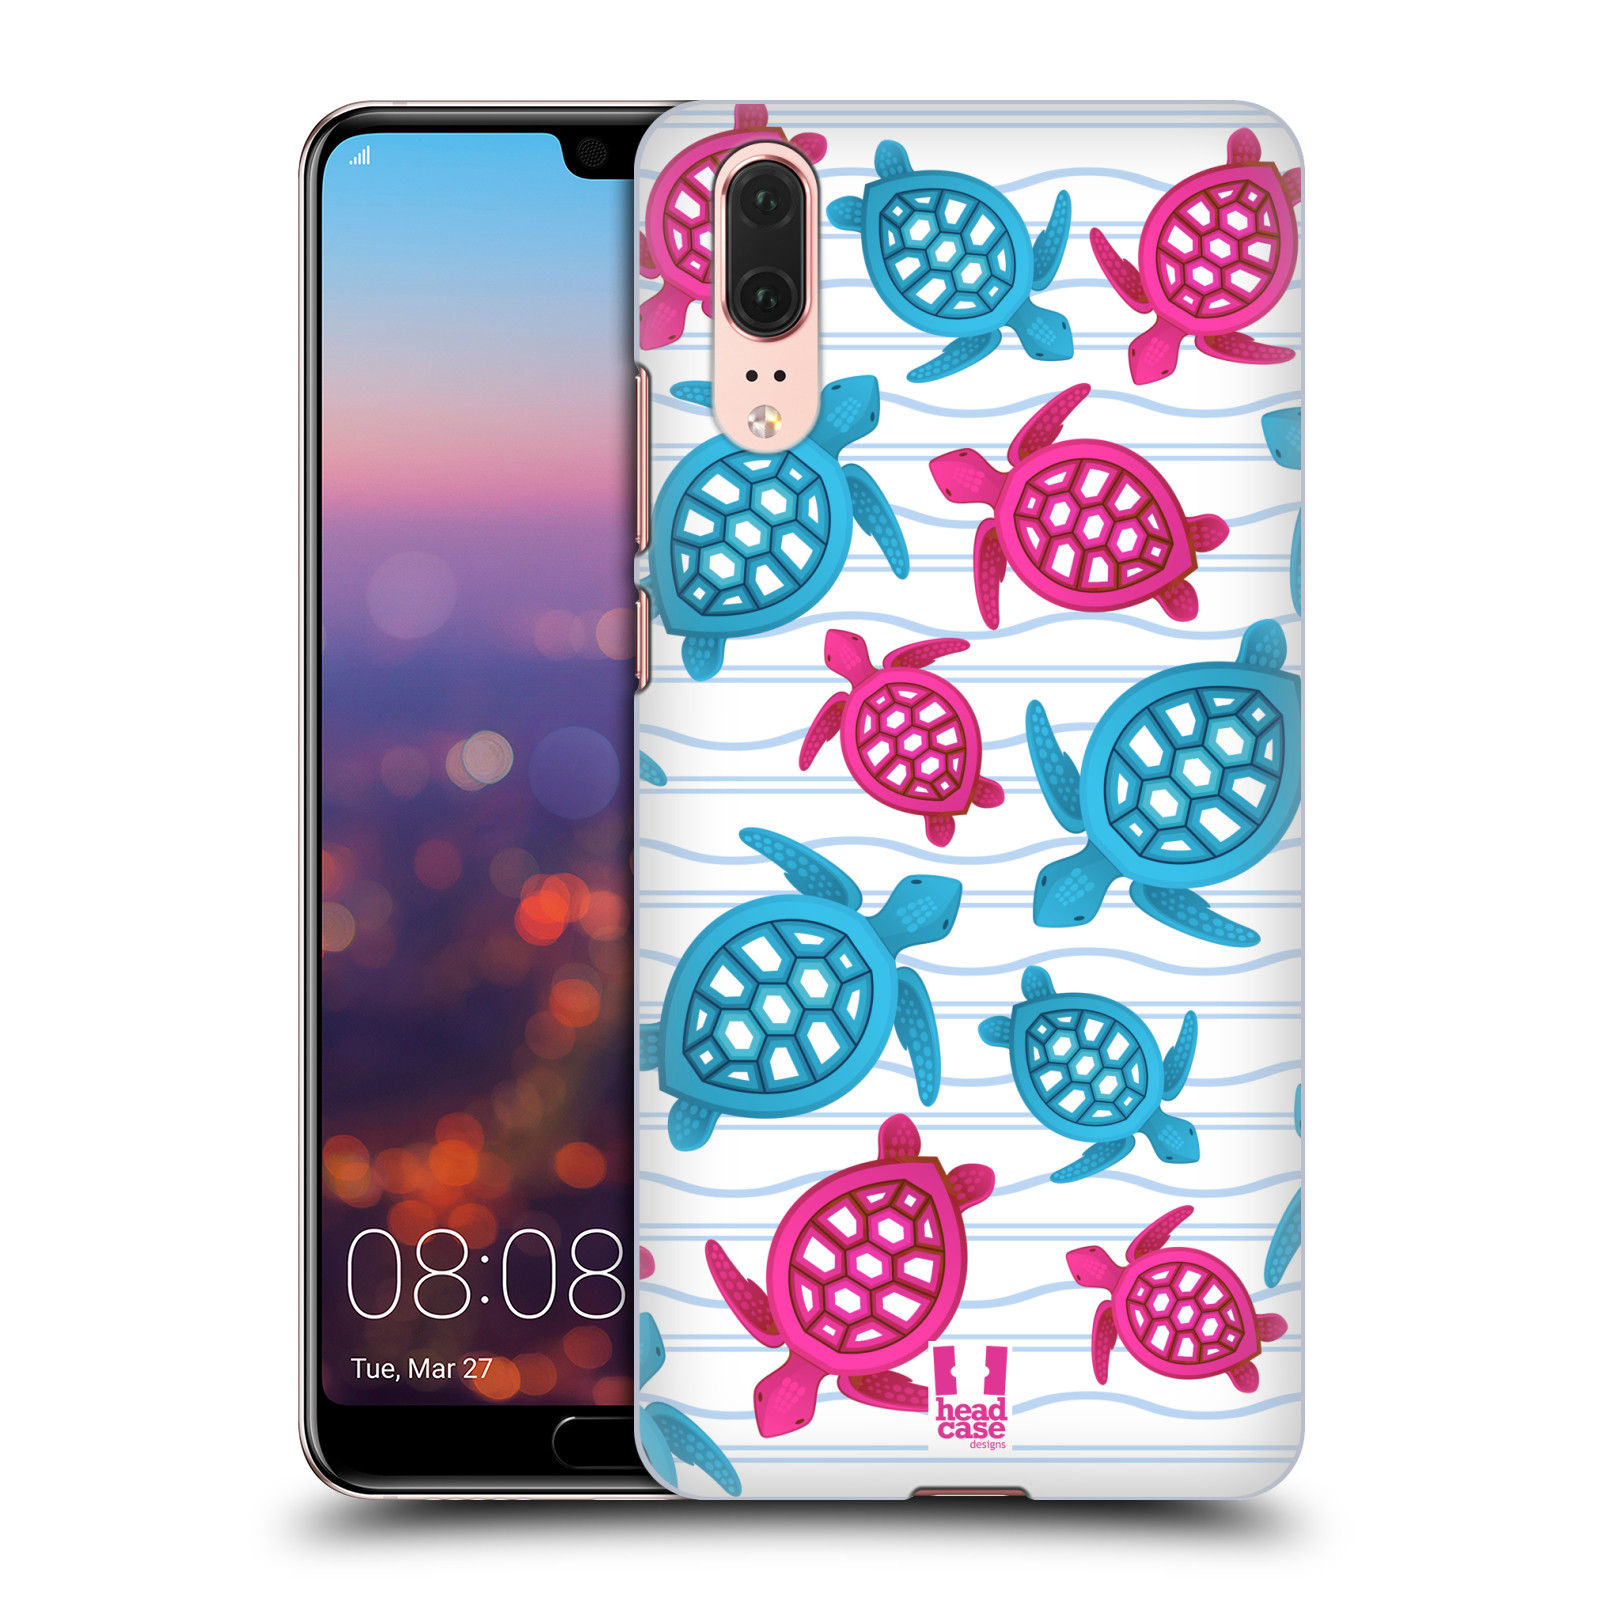 Zadní obal pro mobil Huawei P20 - HEAD CASE - kreslený mořský vzor želvičky